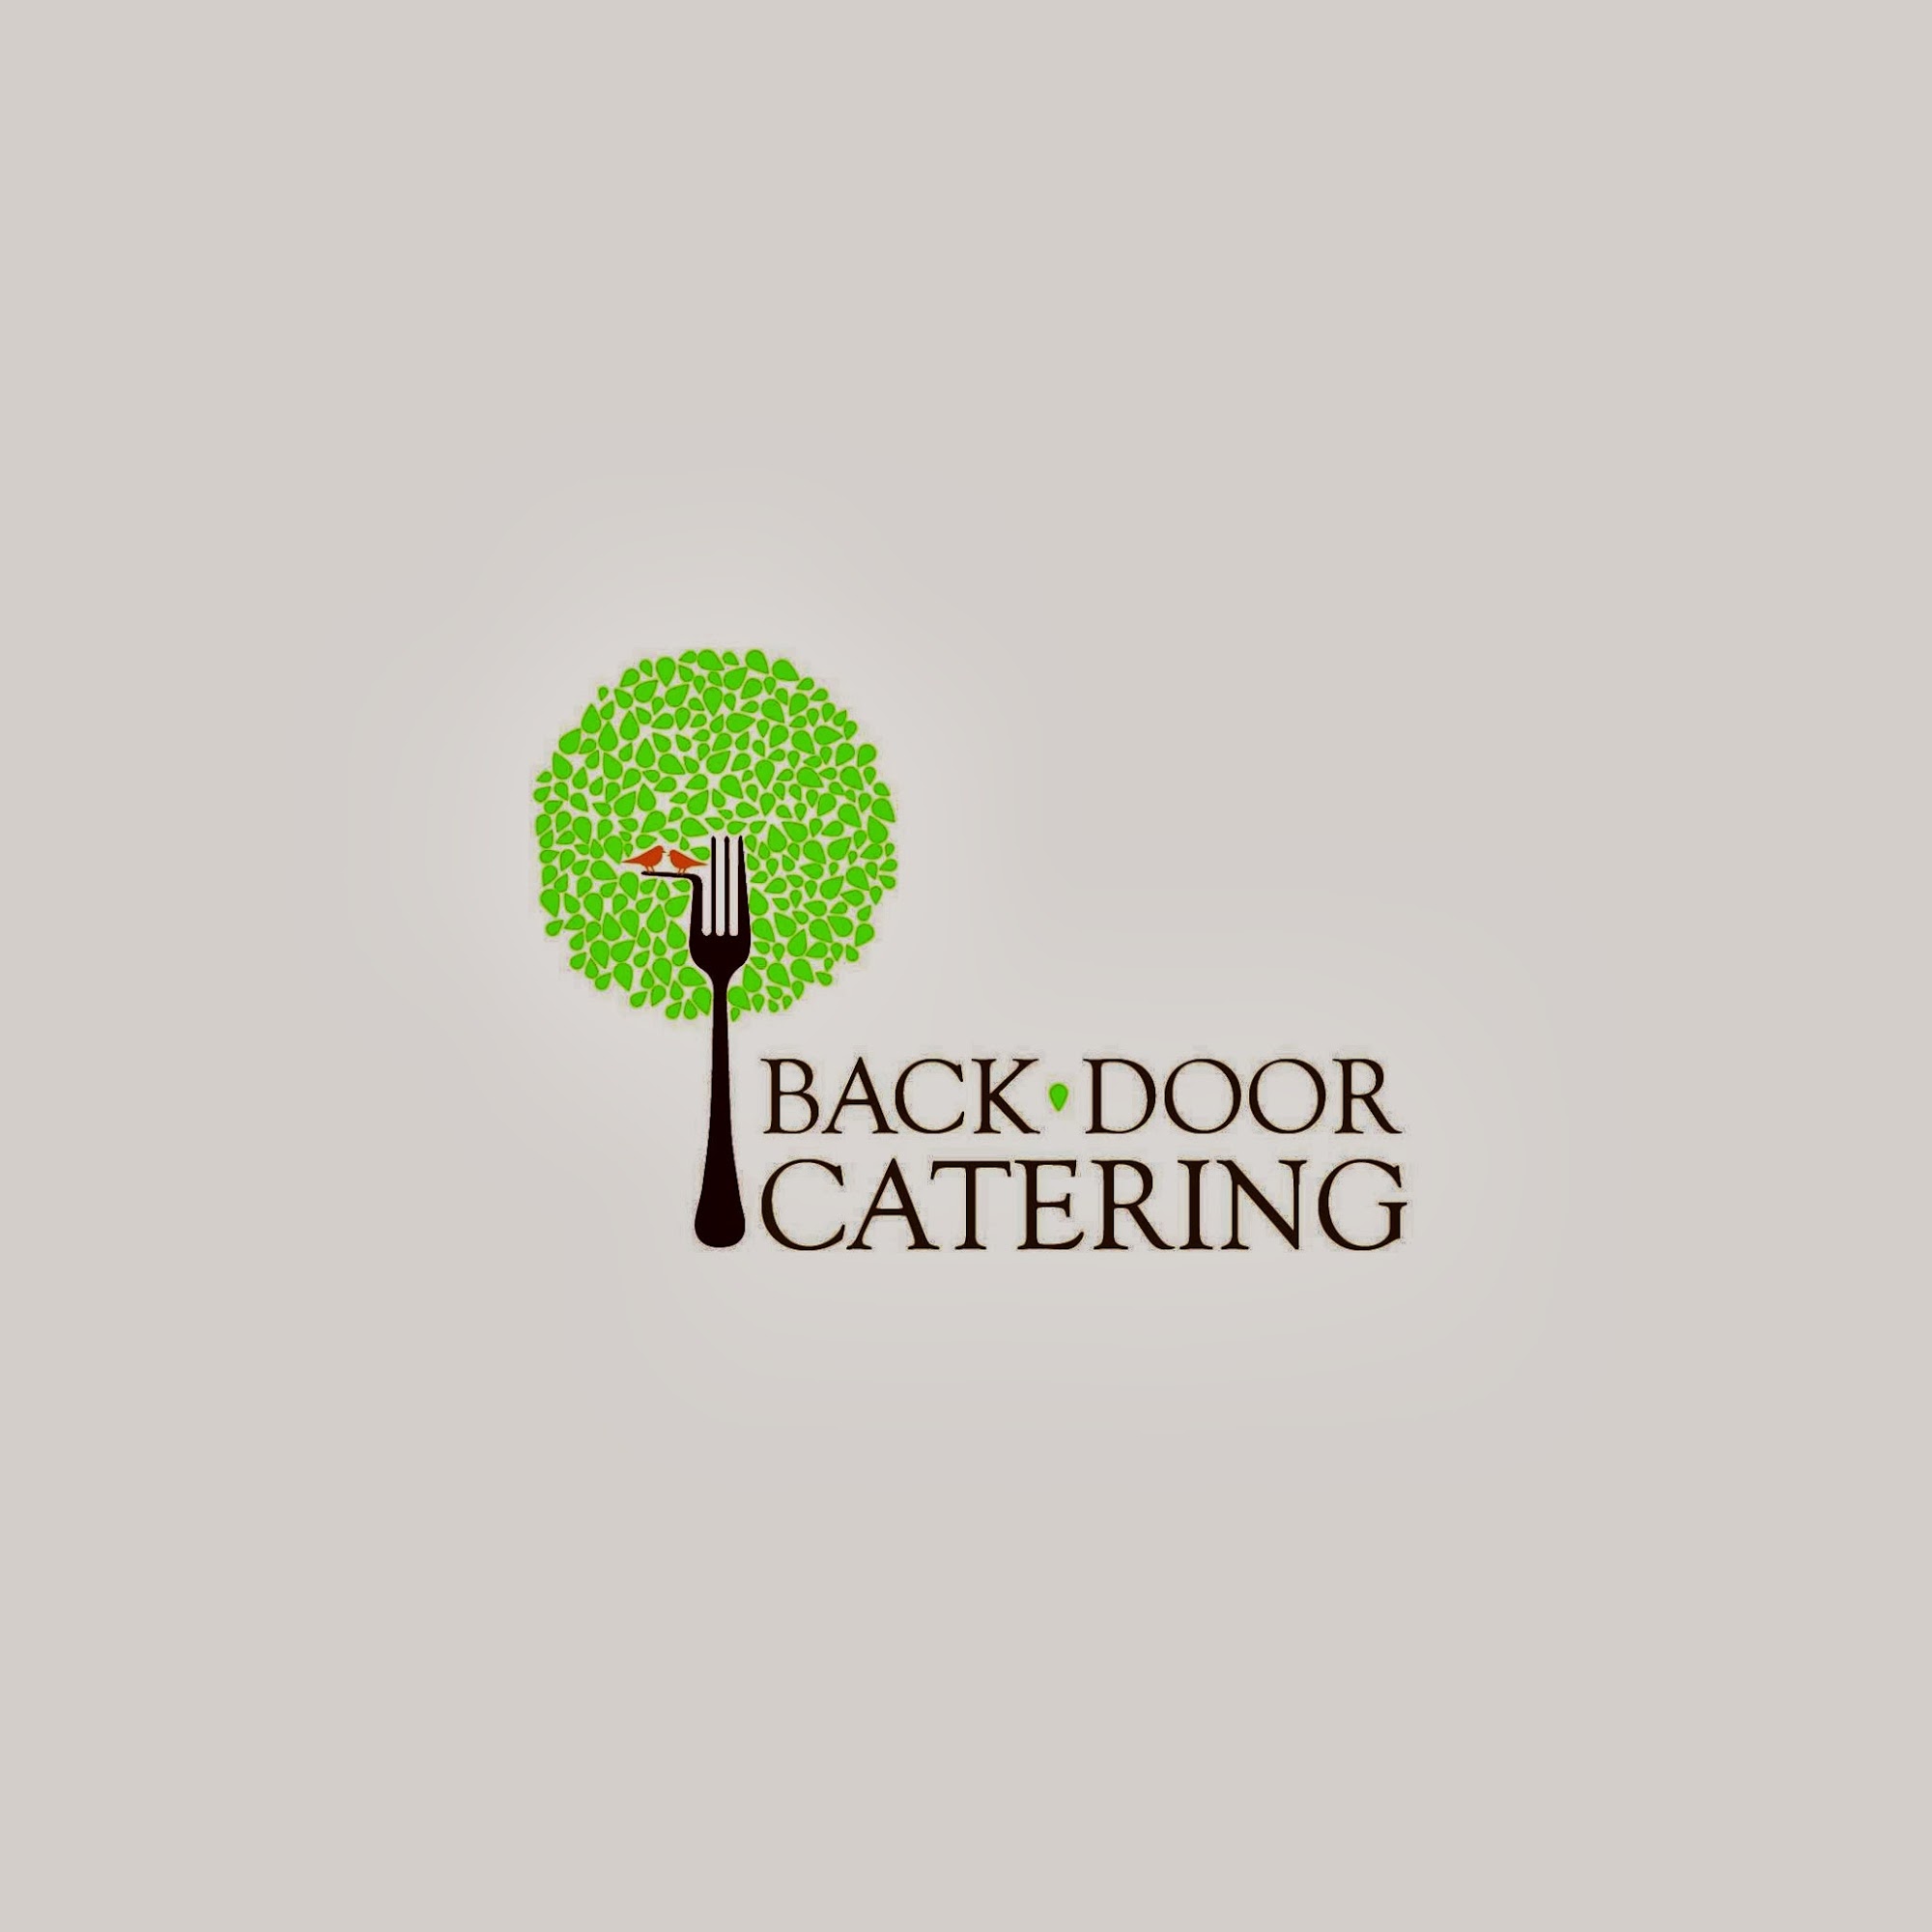 Backdoor Catering Texas